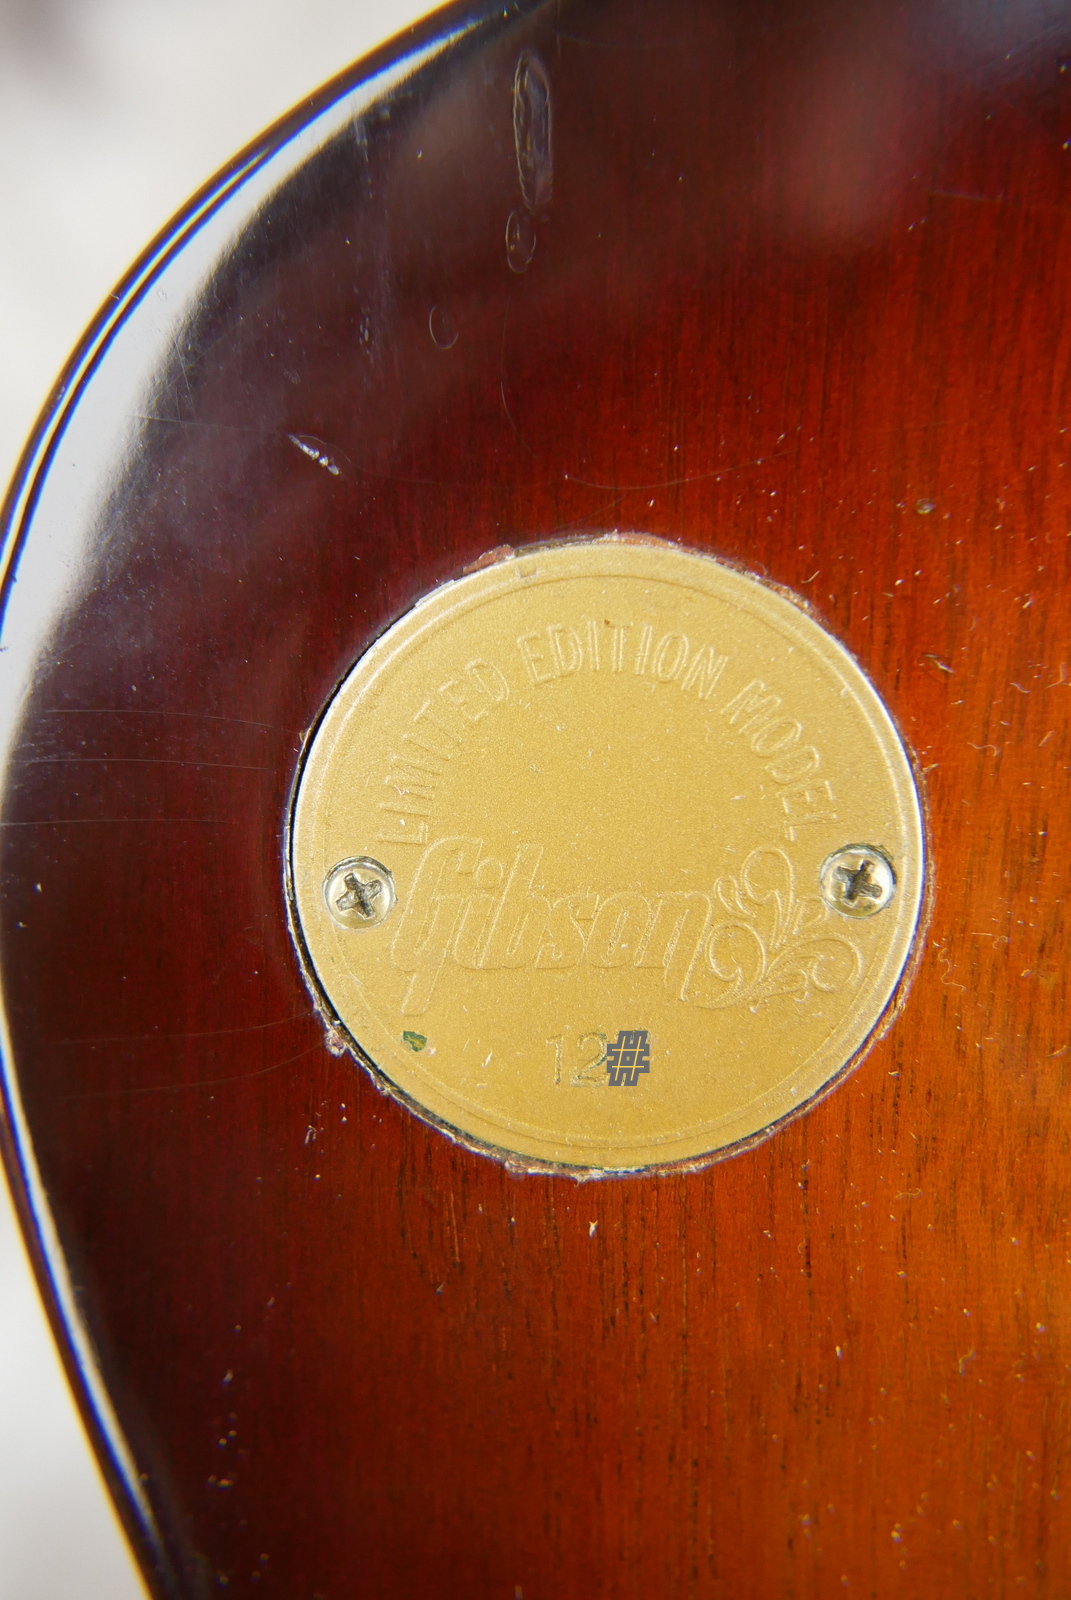 Gibson_Firebird_V_Medallion_limited_edition_sunburst_1972-013.JPG